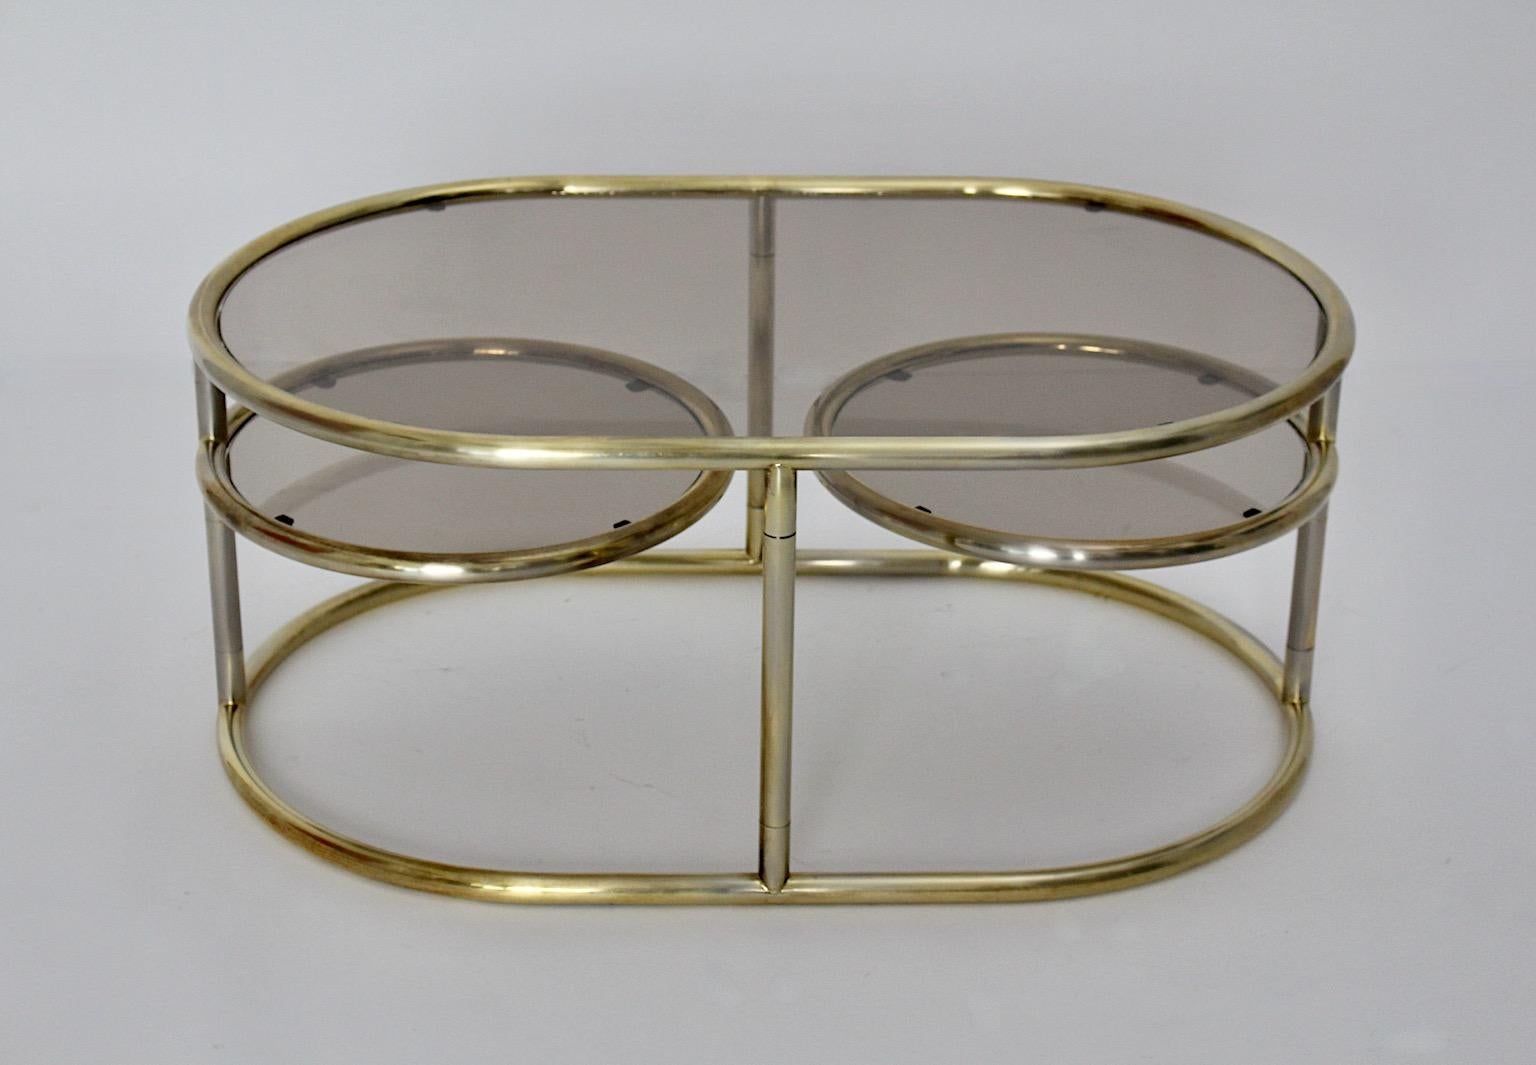 Modernistischer Vintage Couchtisch oder Sofatisch aus goldenem Metallrohrgestell und Glasplatten 1960er Jahre Italien.
Ein wunderbarer Sofatisch oder Couchtisch in ovaler Form mit zwei drehbaren Platten.
Während der Korpus des Sofatischs eine ovale